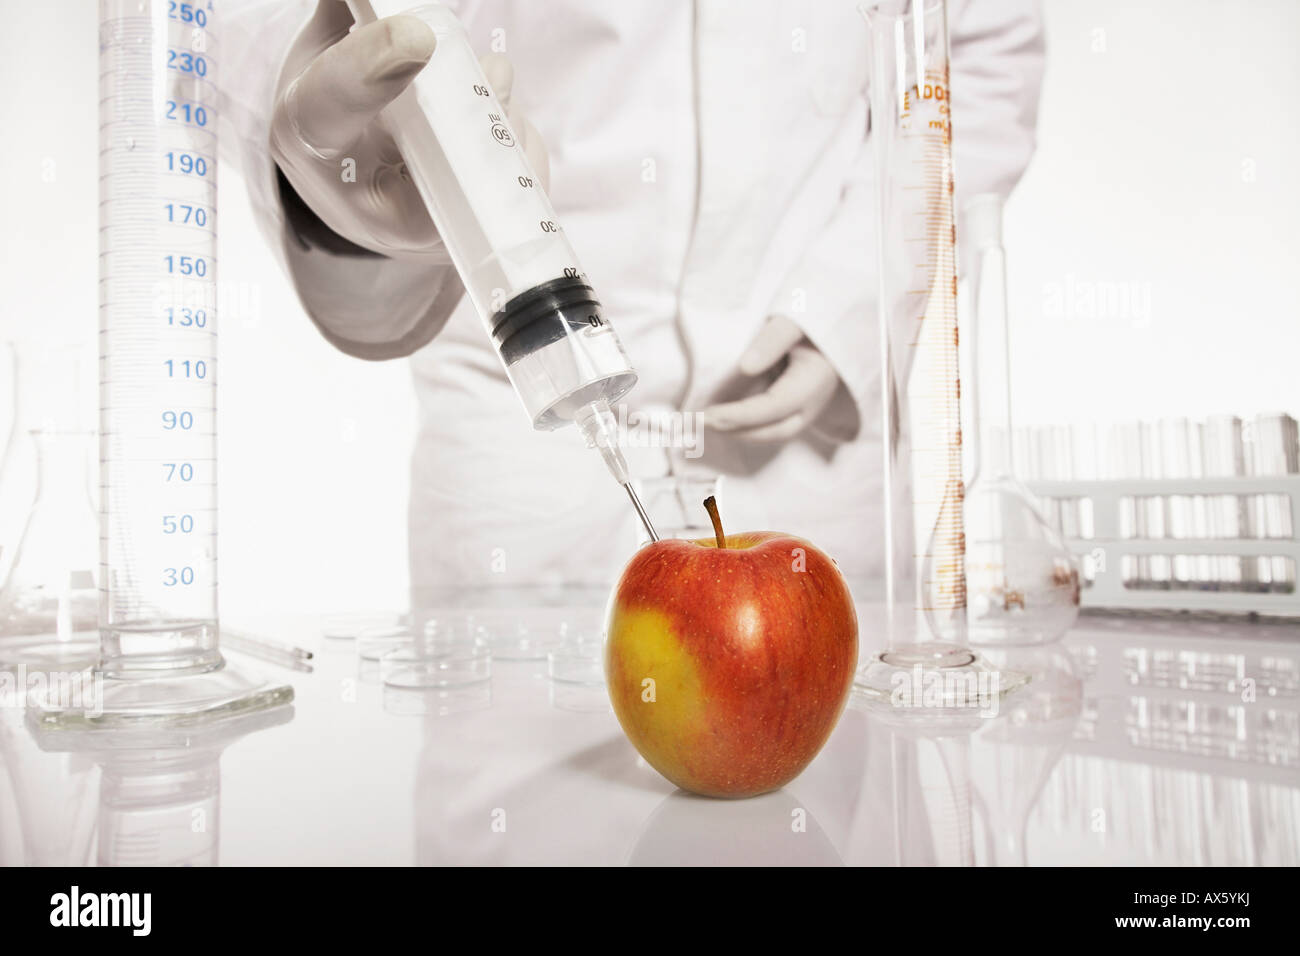 L'injection d'une substance chimiste dans un apple Banque D'Images